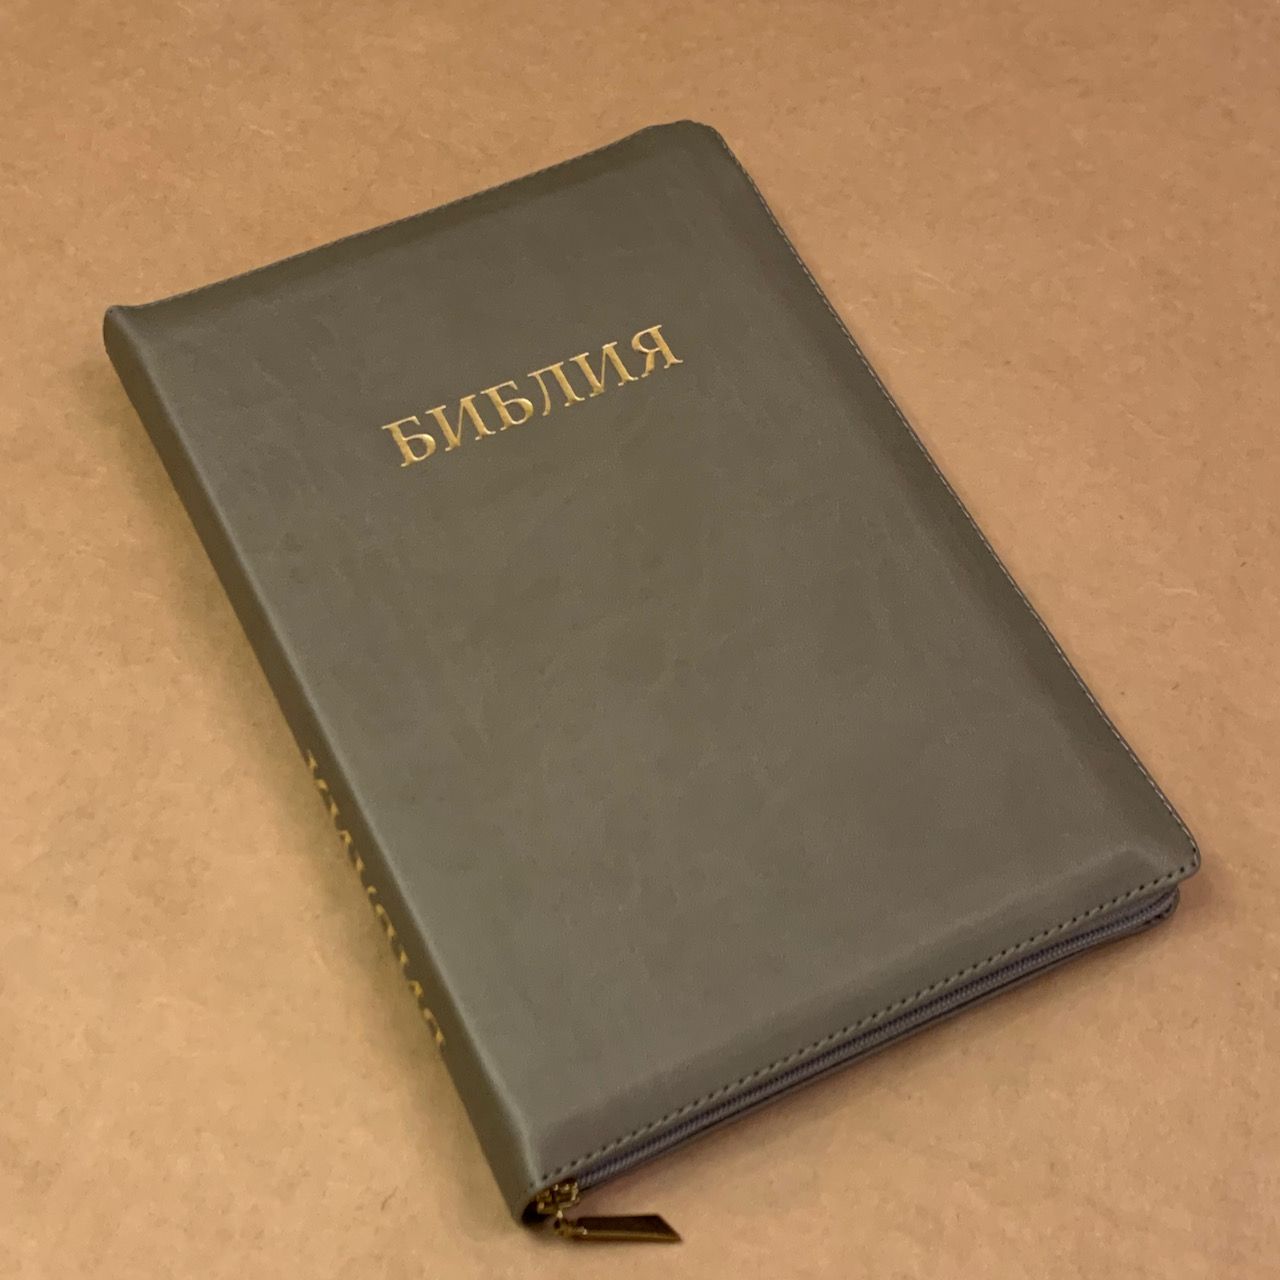 Библия 077z формат, переплет из искусственной кожи на молнии, цвет серый, большой формат, 180*260 мм, цветные карты, крупный шрифт